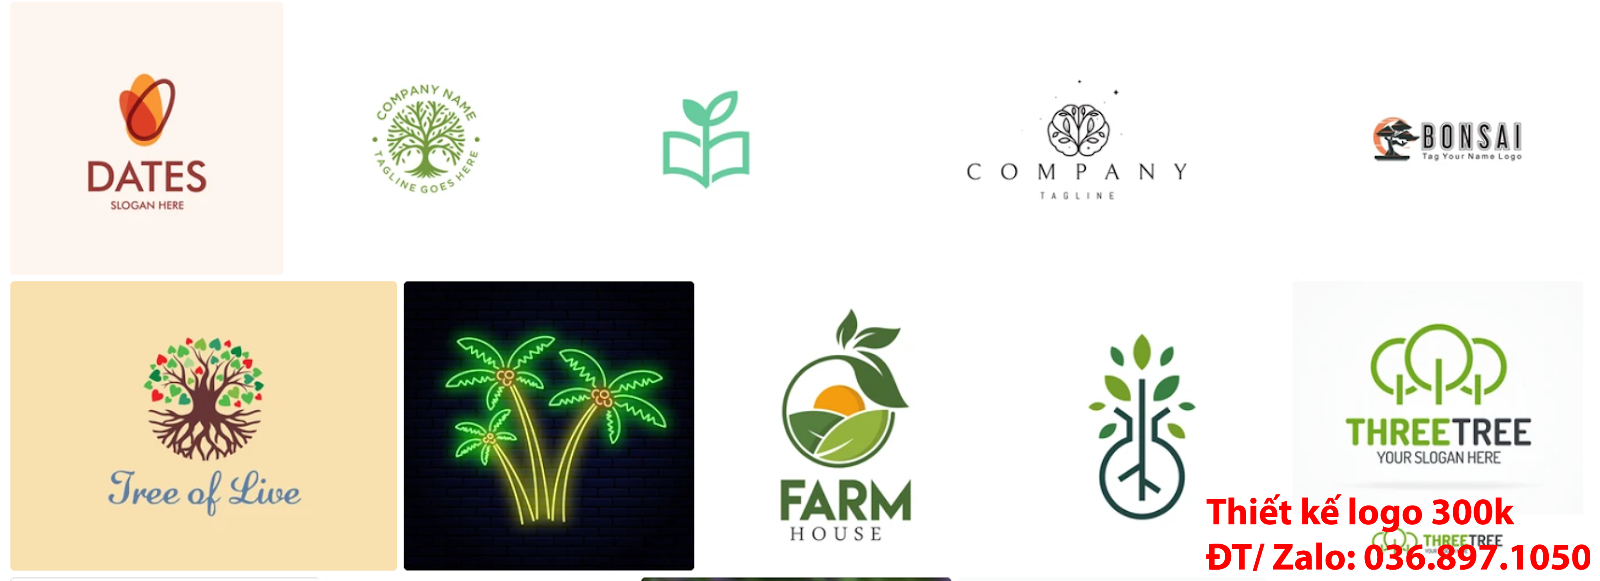 Nhận tạo Mẫu logo cây xanh đẹp miễn phí chất lượng từ công ty làm lô gô online chuyên nghiệp giá rẻ